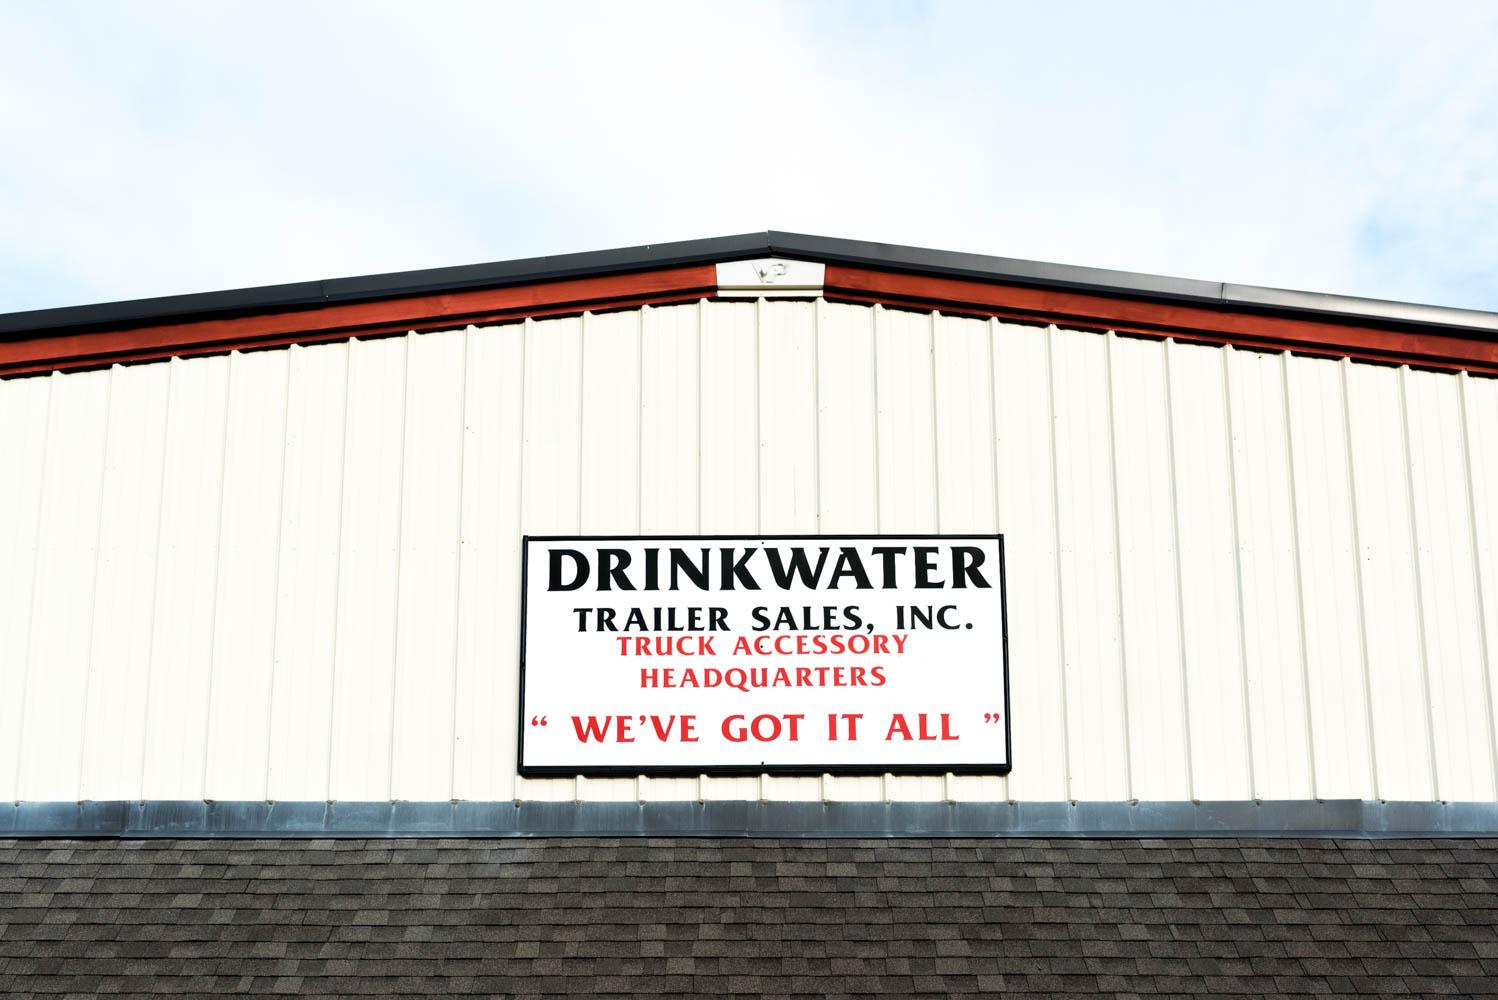 Drinkwater Trailer Sales